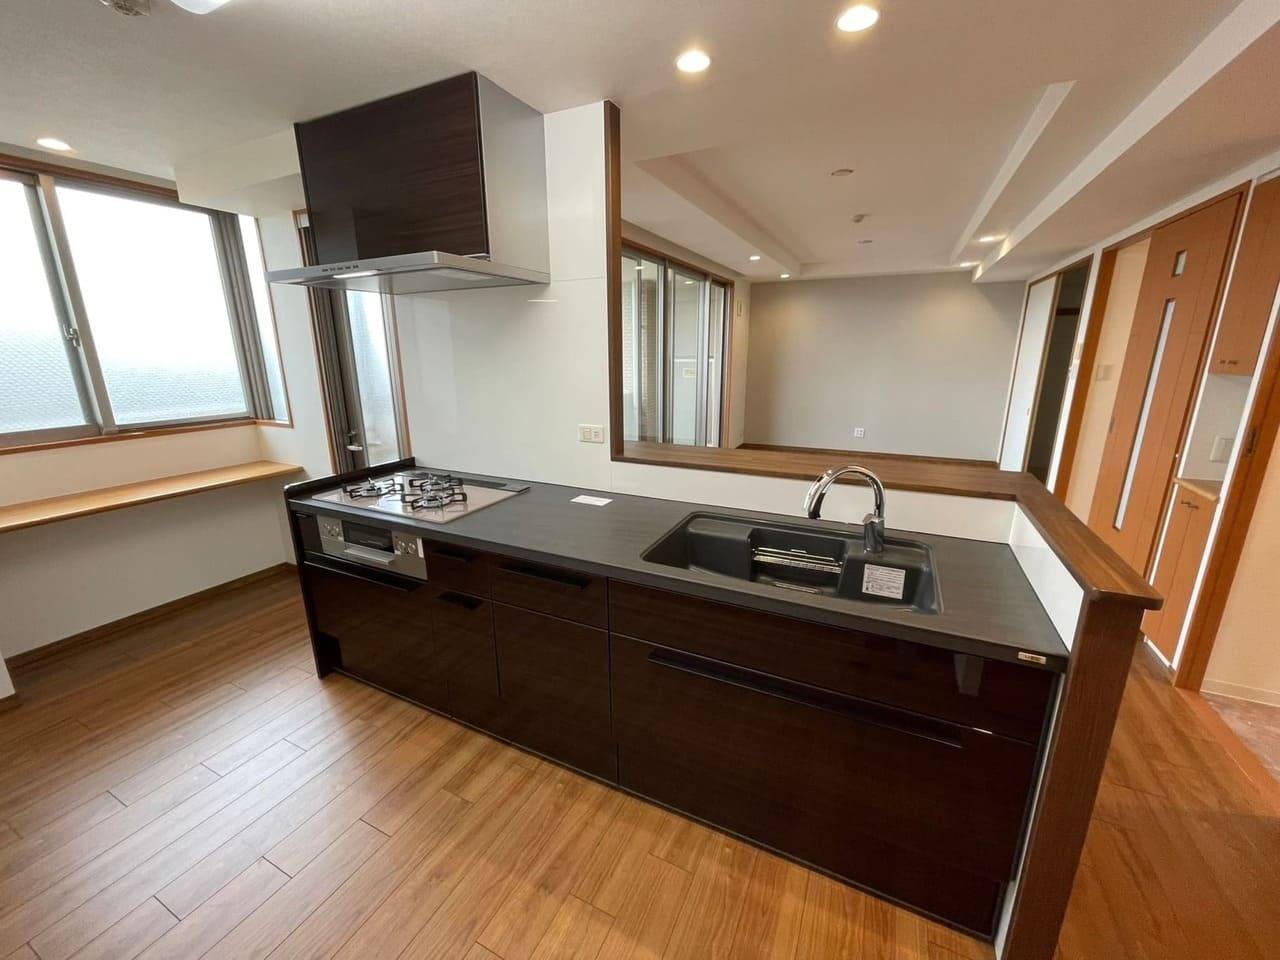 神戸のリフォーム会社ユーユーフォームが施工した高級システムキッチン